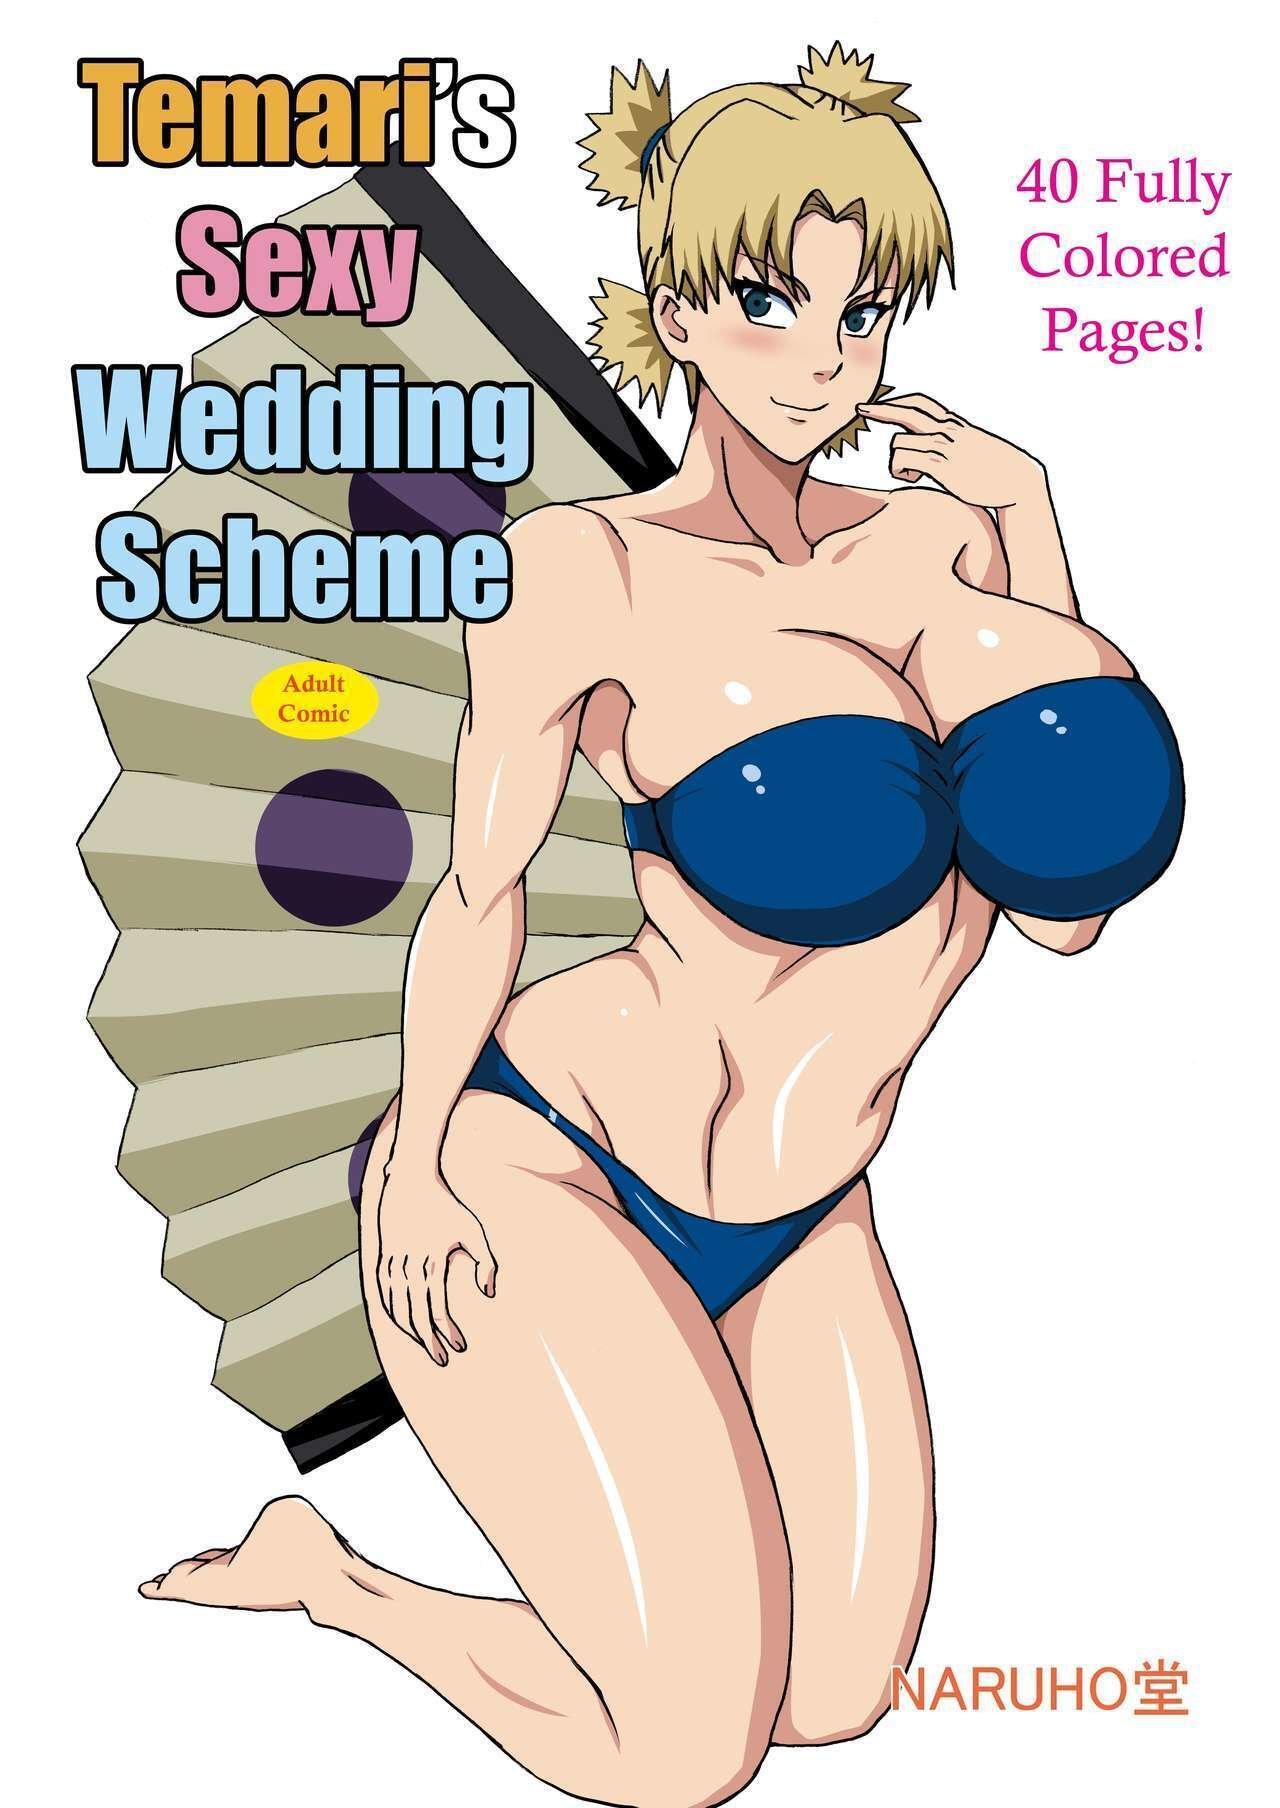 Temaris Sexy Wedding Scheme - 0